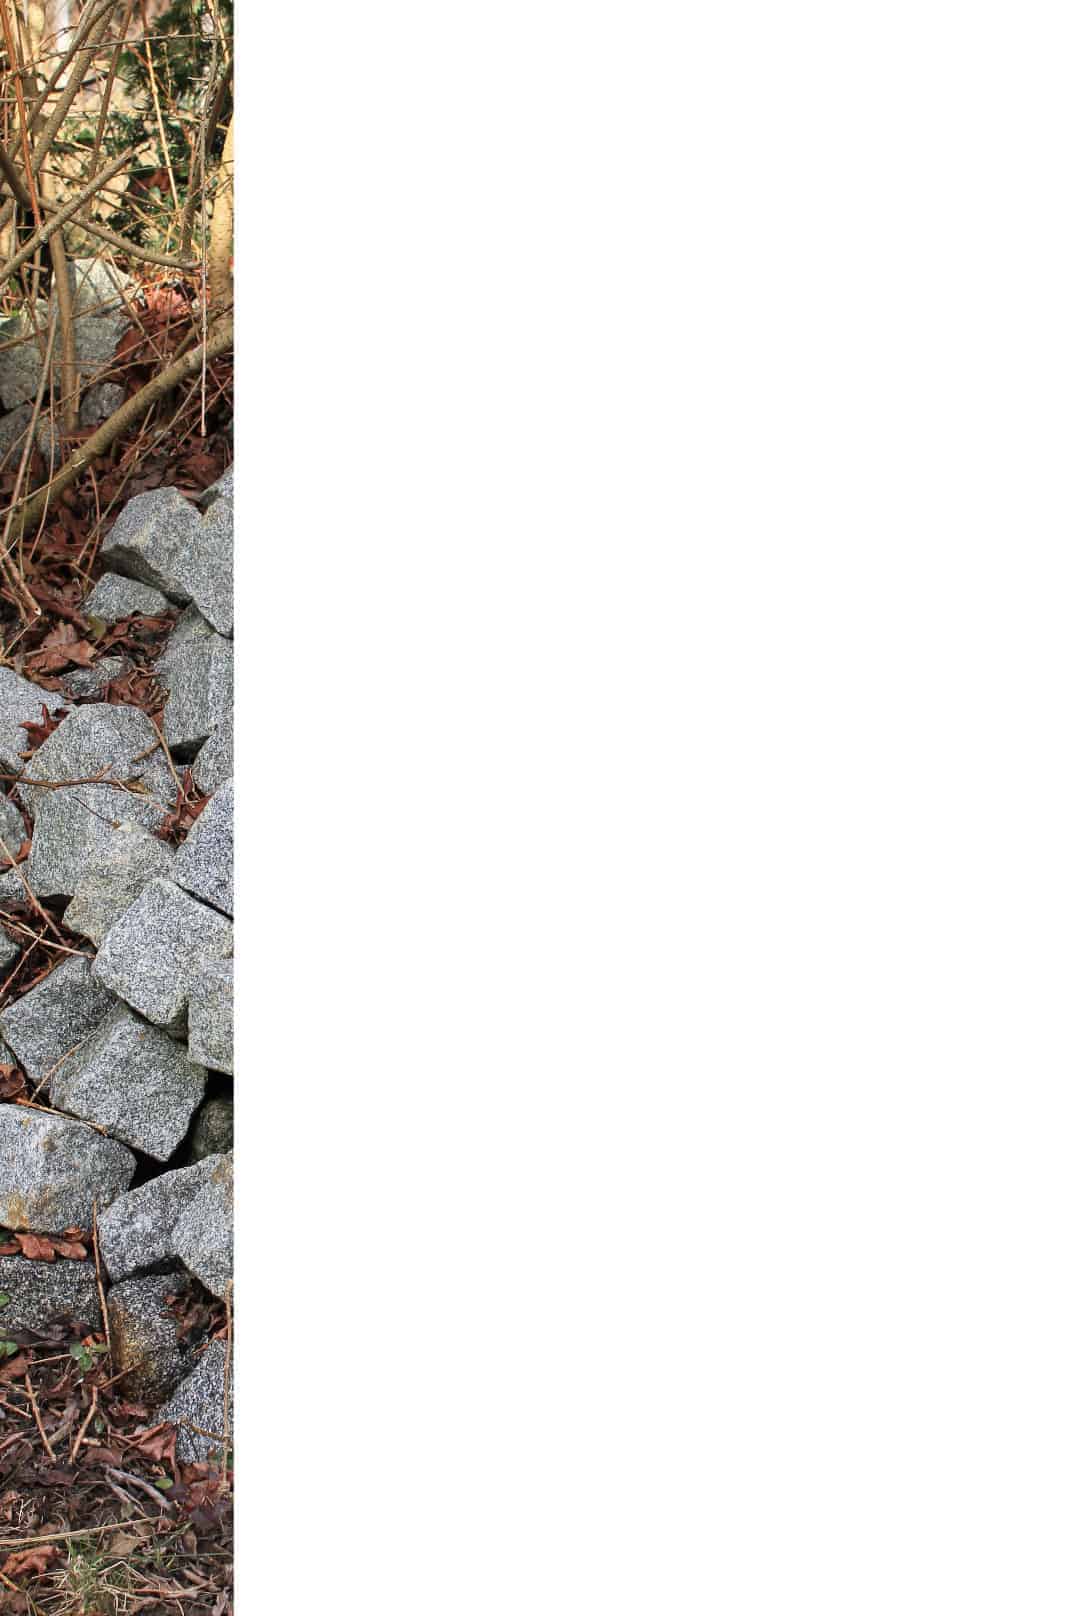 Granitsteine, Granitpflaster, Größe ca. 9-11cm, ca. 50qm